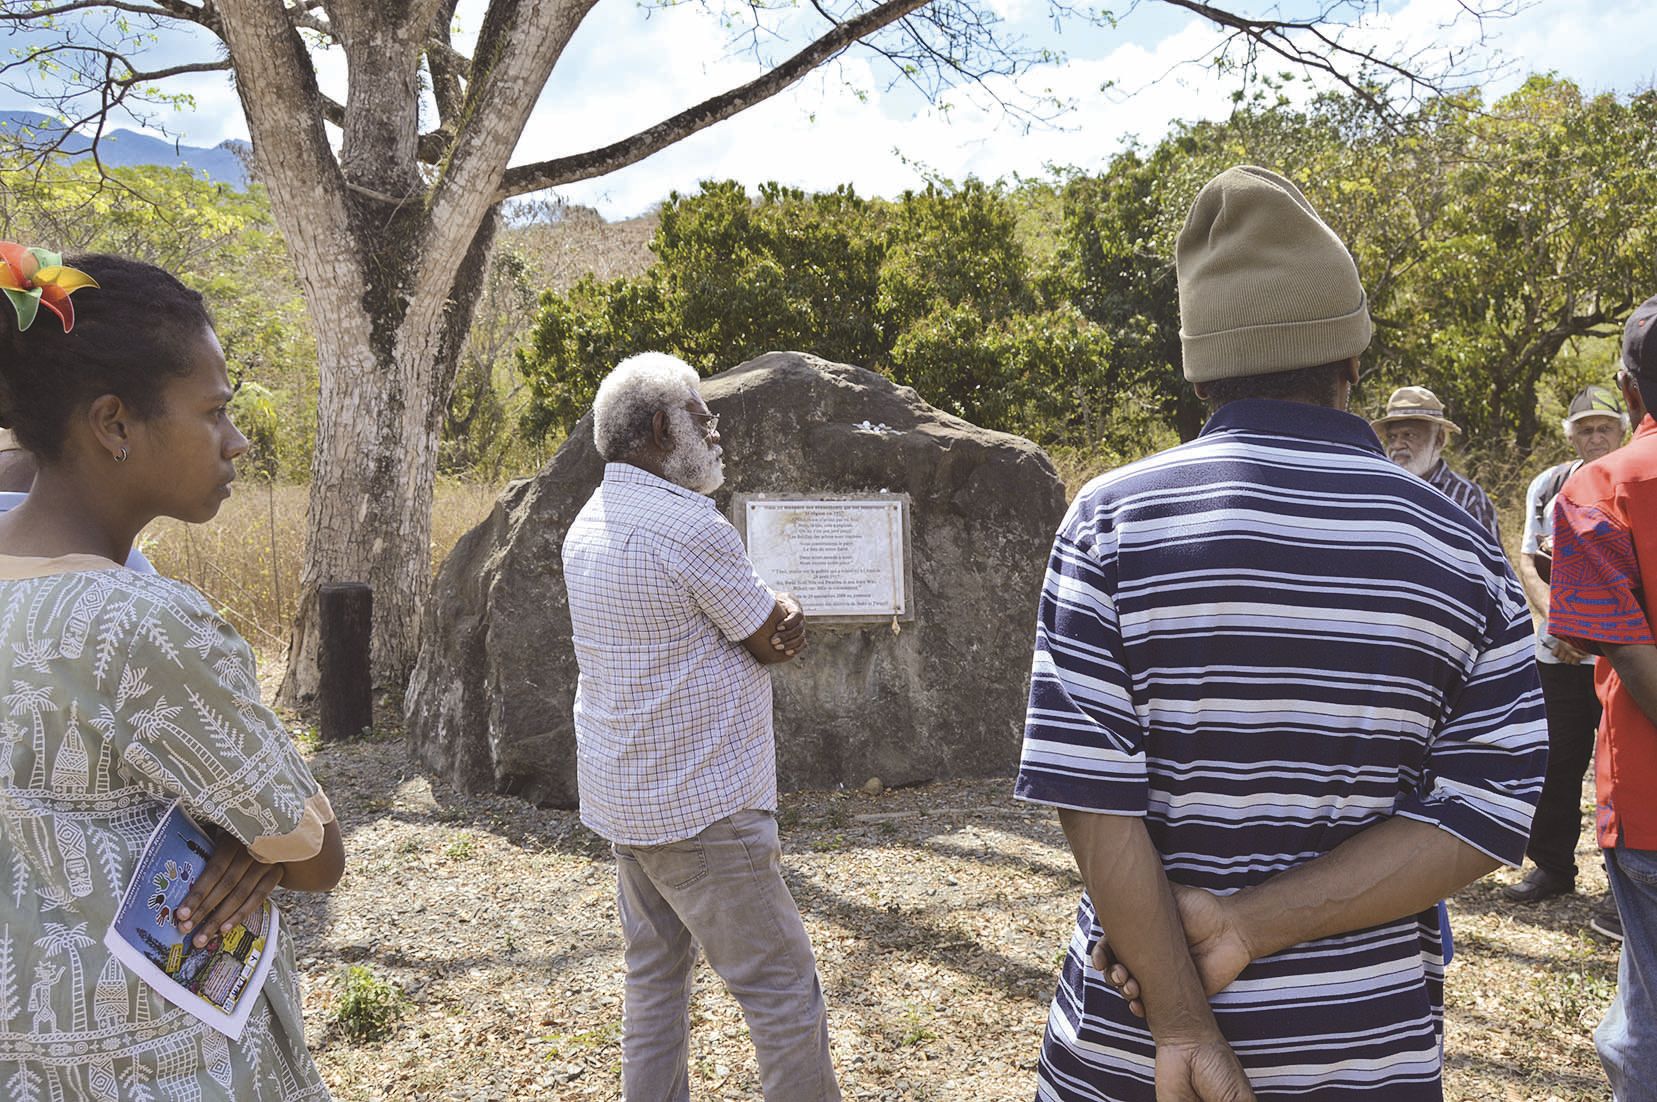 Peu de public s’est en revanche déplacé sur la stèle érigée le 24 septembre 2009 à la tribu de Koniambo, en mémoire de Bwéé Noël et de son frère Wâii qui « ont défié la colonisation » en 1917. Elle sera lieu de souvenir en novembre lors de la cérémonie du